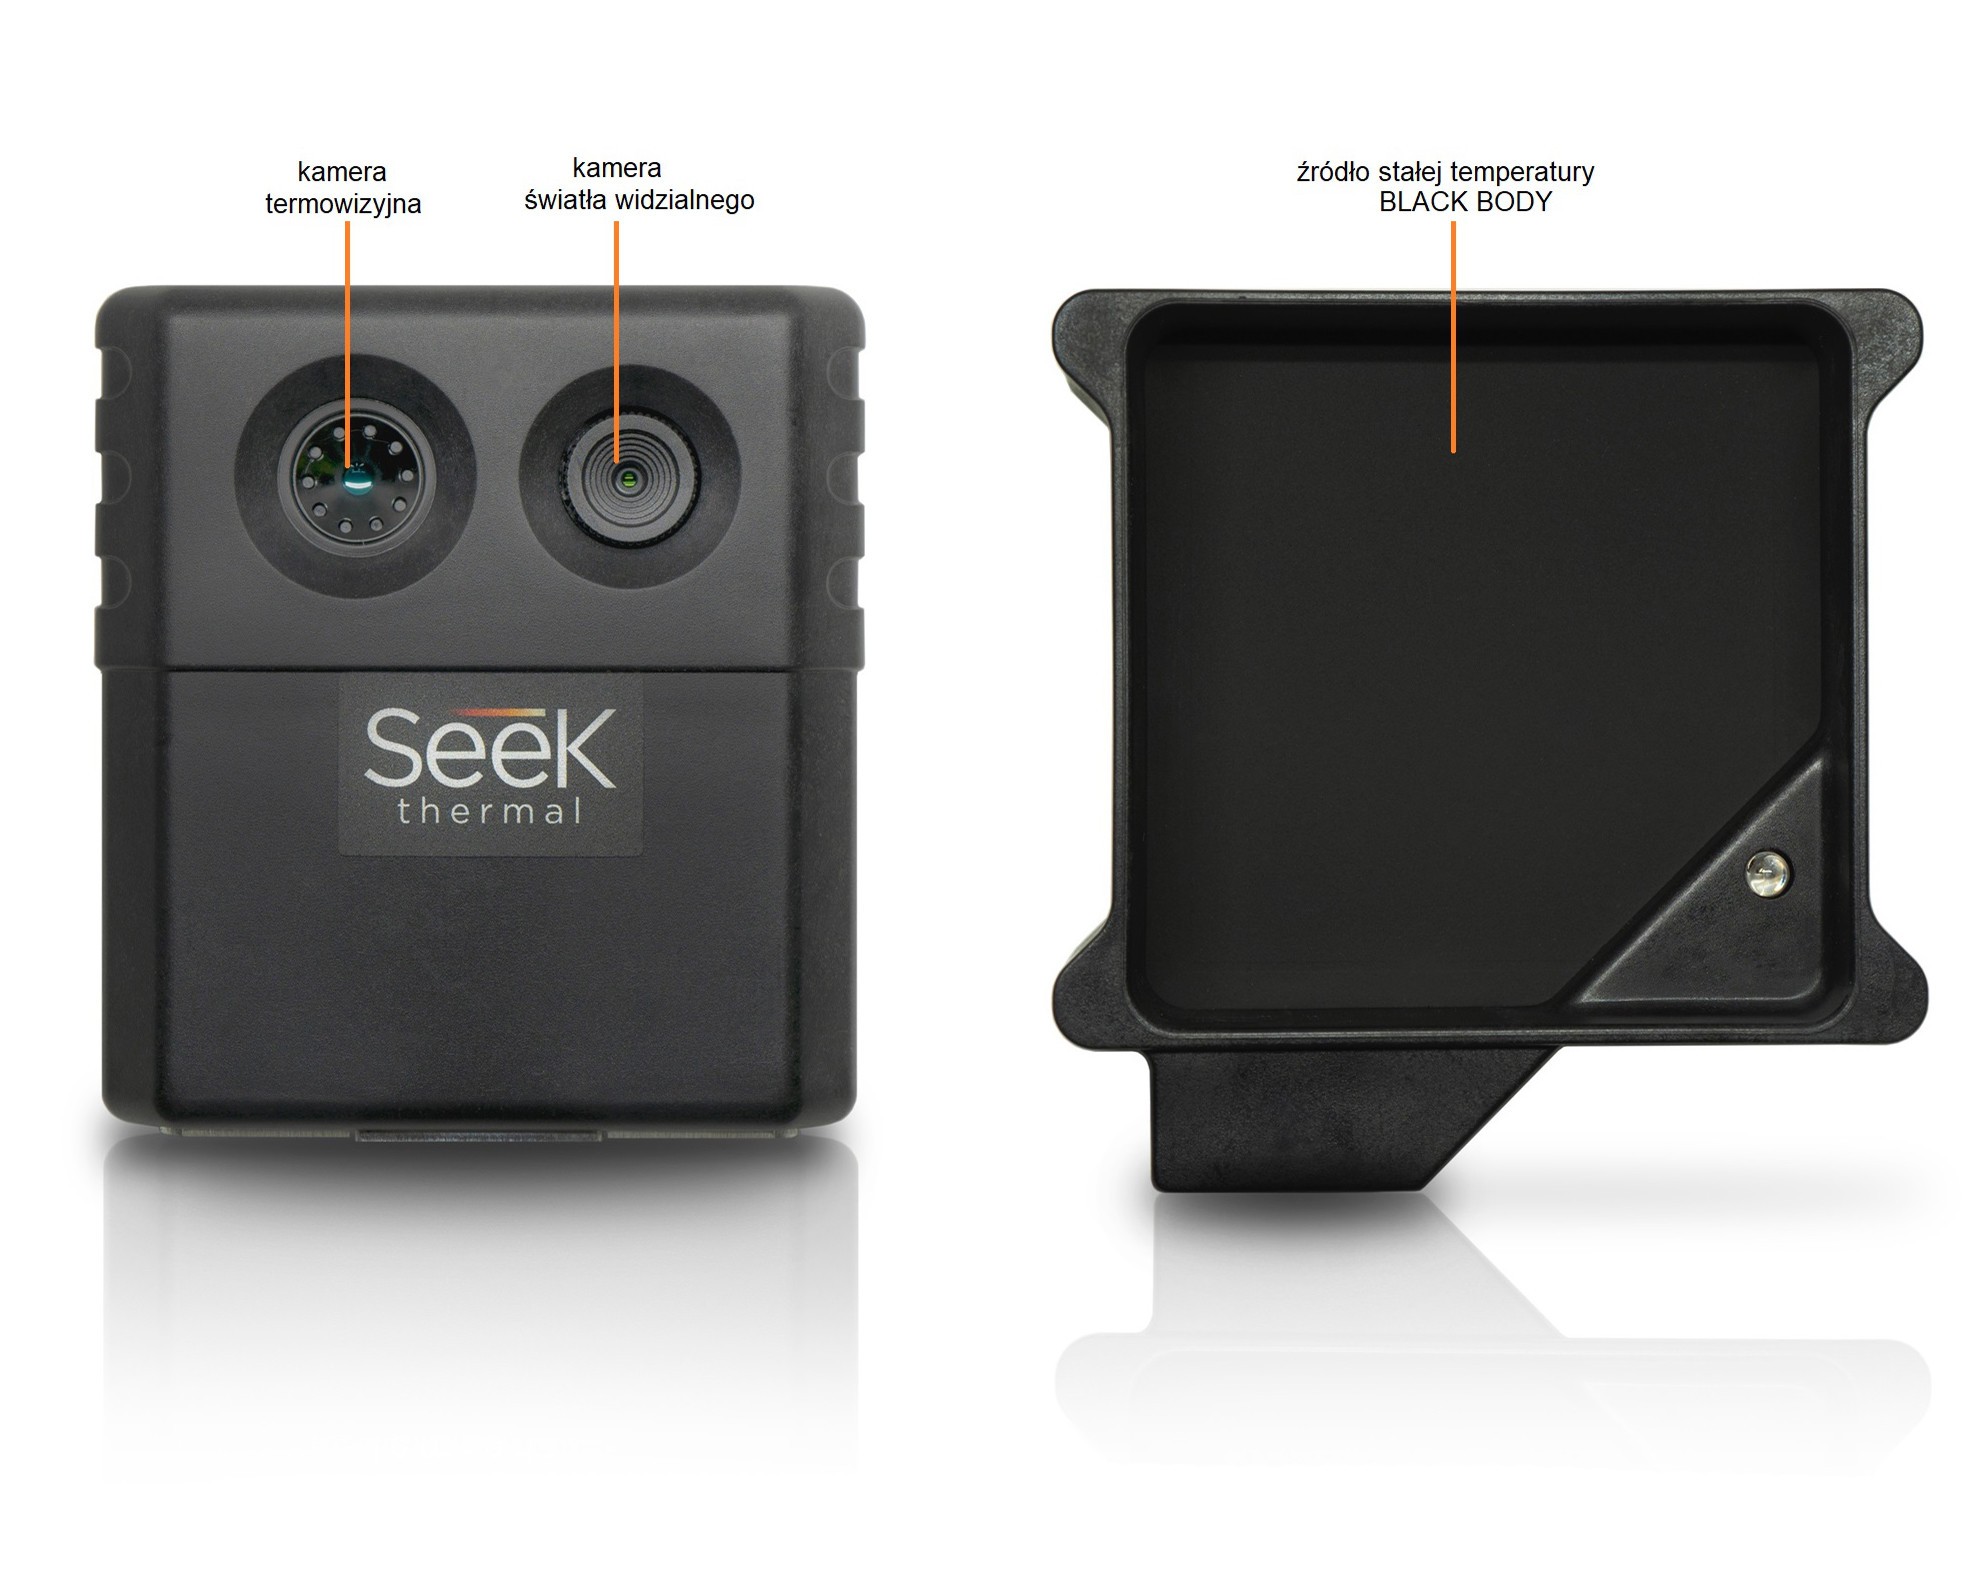 Seek Scan - moduł kamery termowizyjnej i video oraz źródło stałej temperatury BlackBody